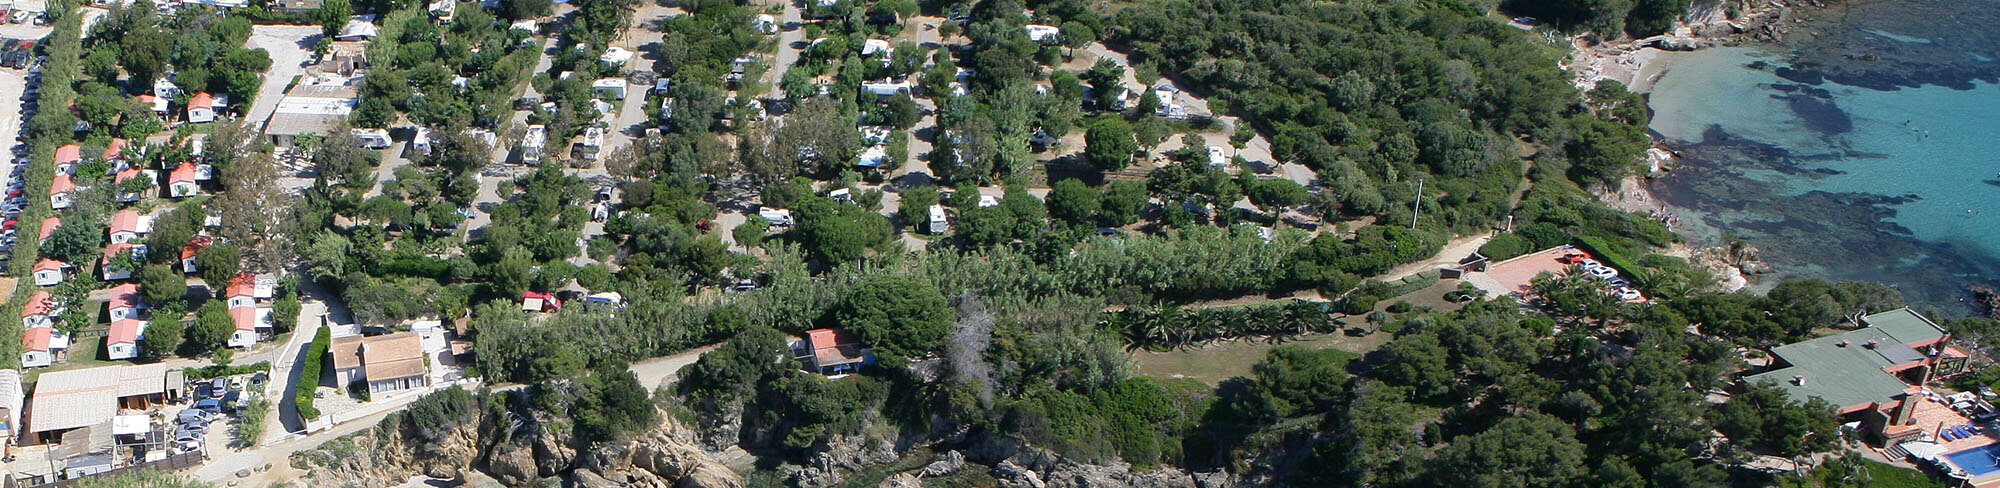 Contacter le Camping de la Tour Fendue à Hyères, presqu île de Giens, près de Porquerolles.